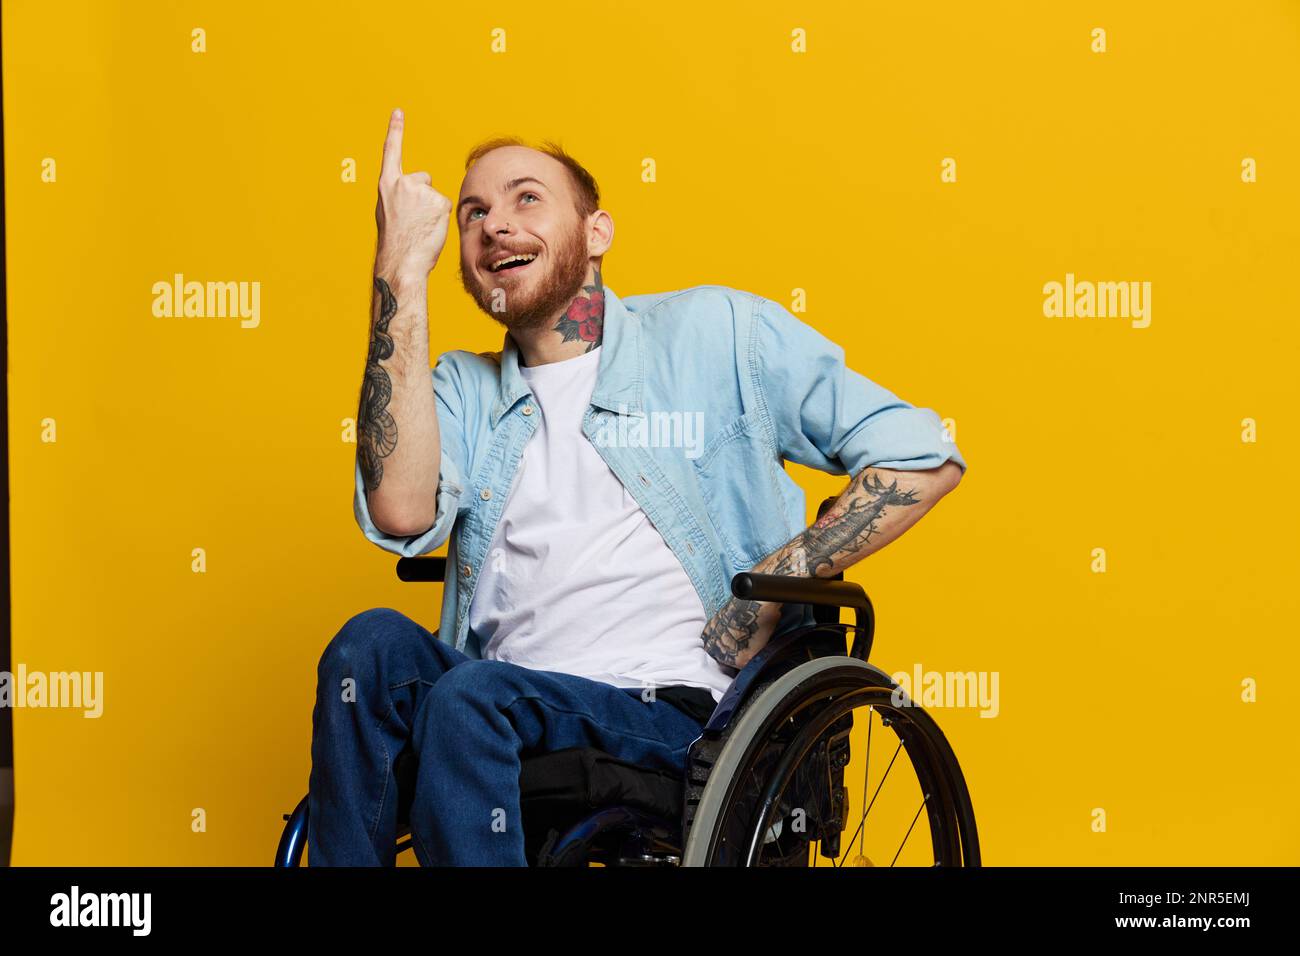 Un homme en fauteuil roulant a des problèmes avec le système musculo-squelettique regarde la caméra montre un doigt dessus, avec des tatouages sur ses mains assis sur un jaune Banque D'Images